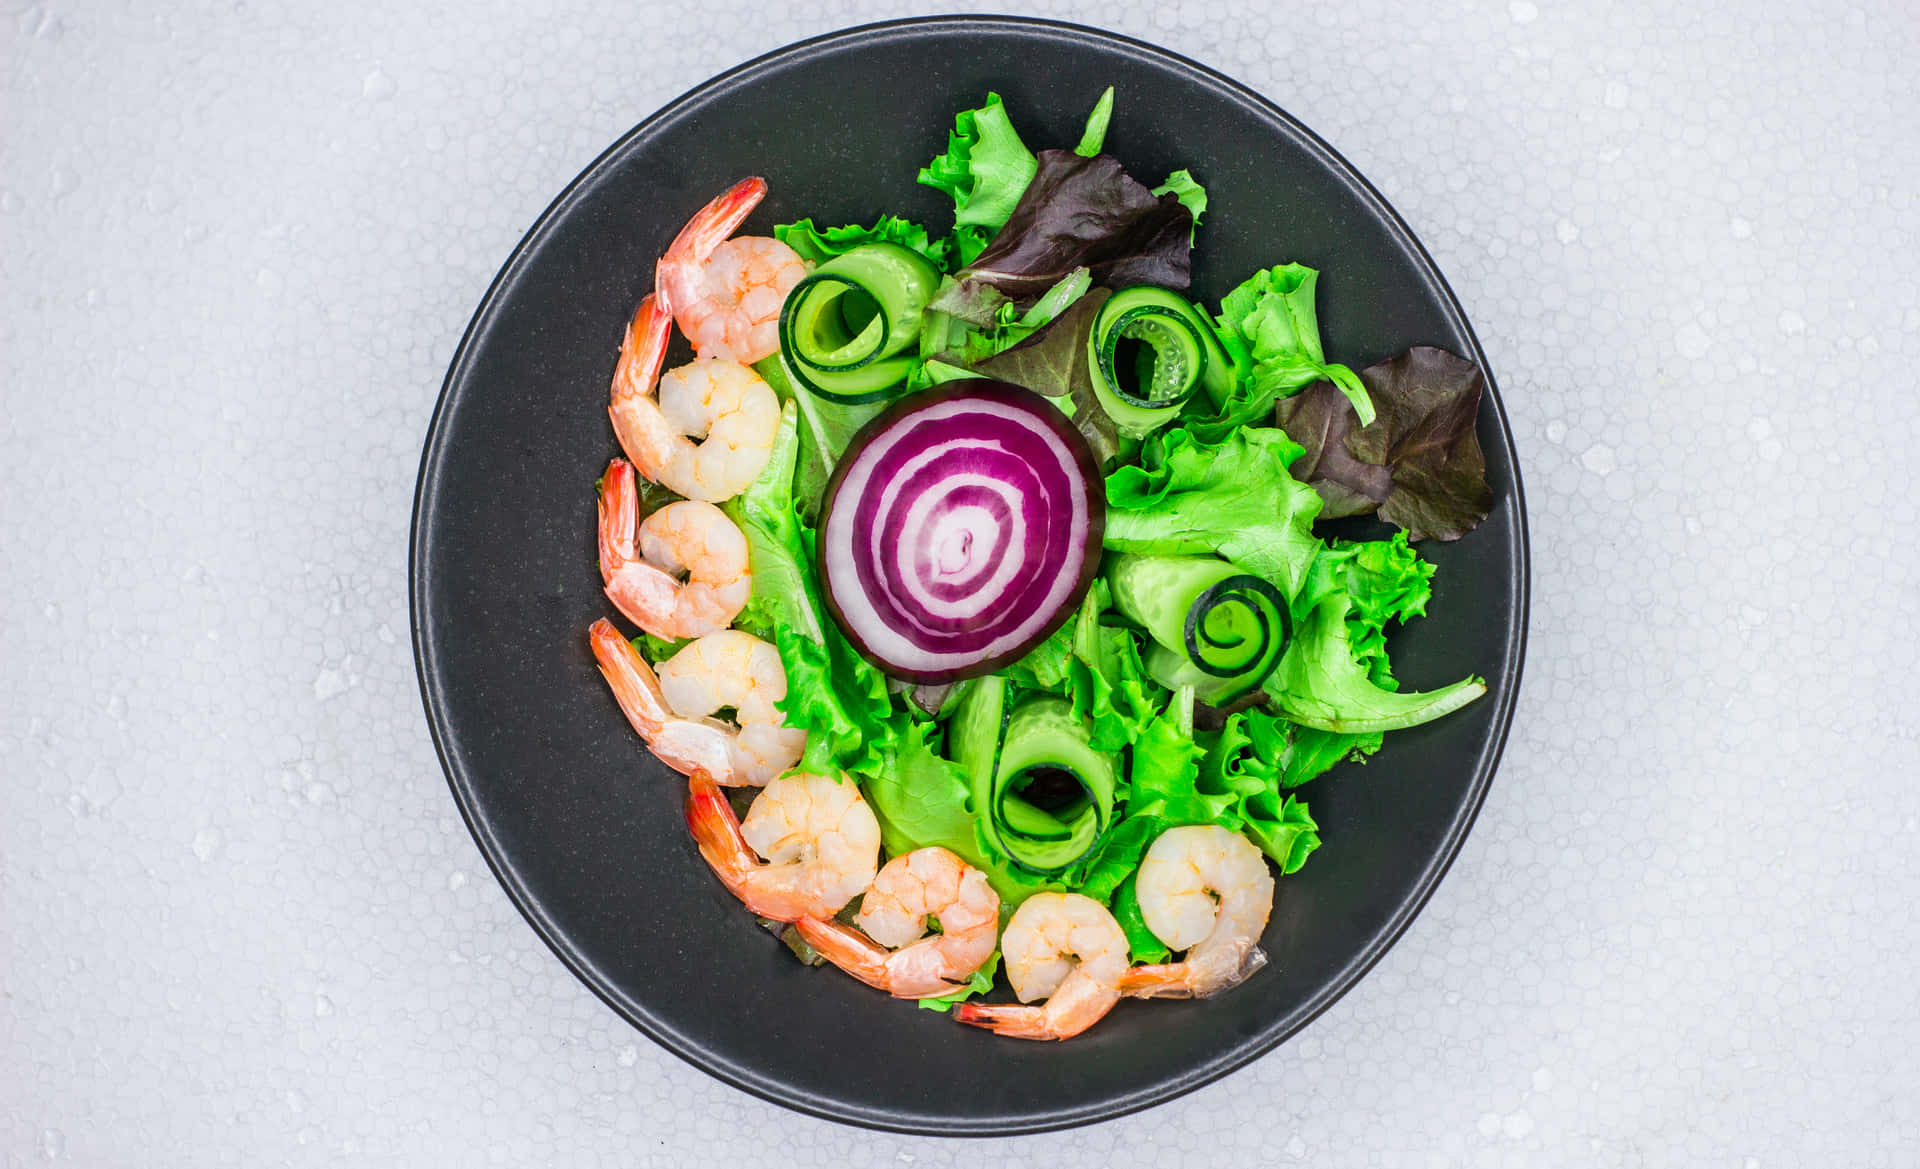 #SaladsForLife - Start your healthy habit today!"